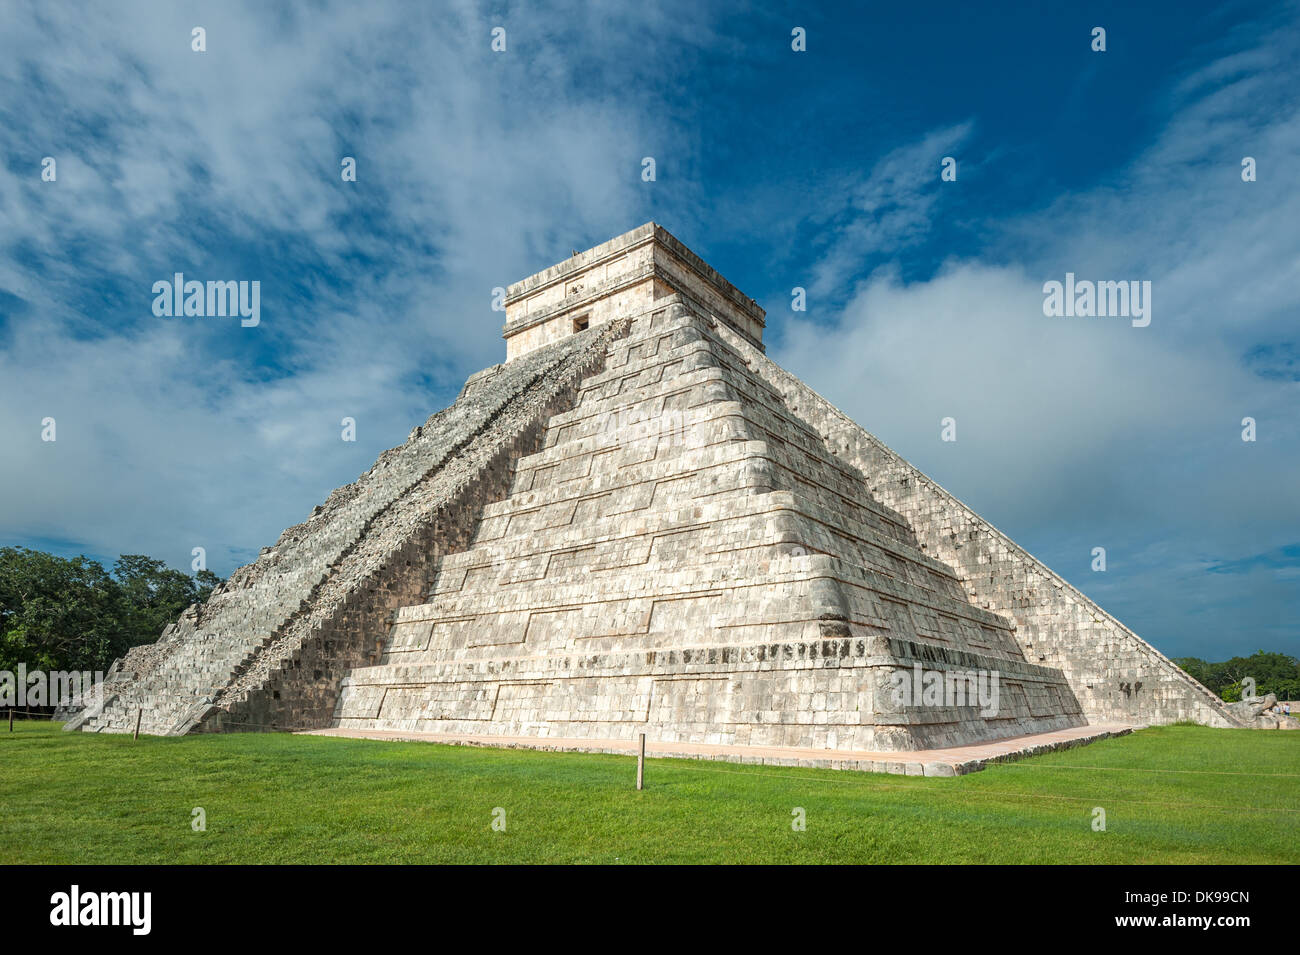 El Castillo ou Temple de la pyramide Kukulkan, Chichen Itza, Yucatan, Mexique Banque D'Images